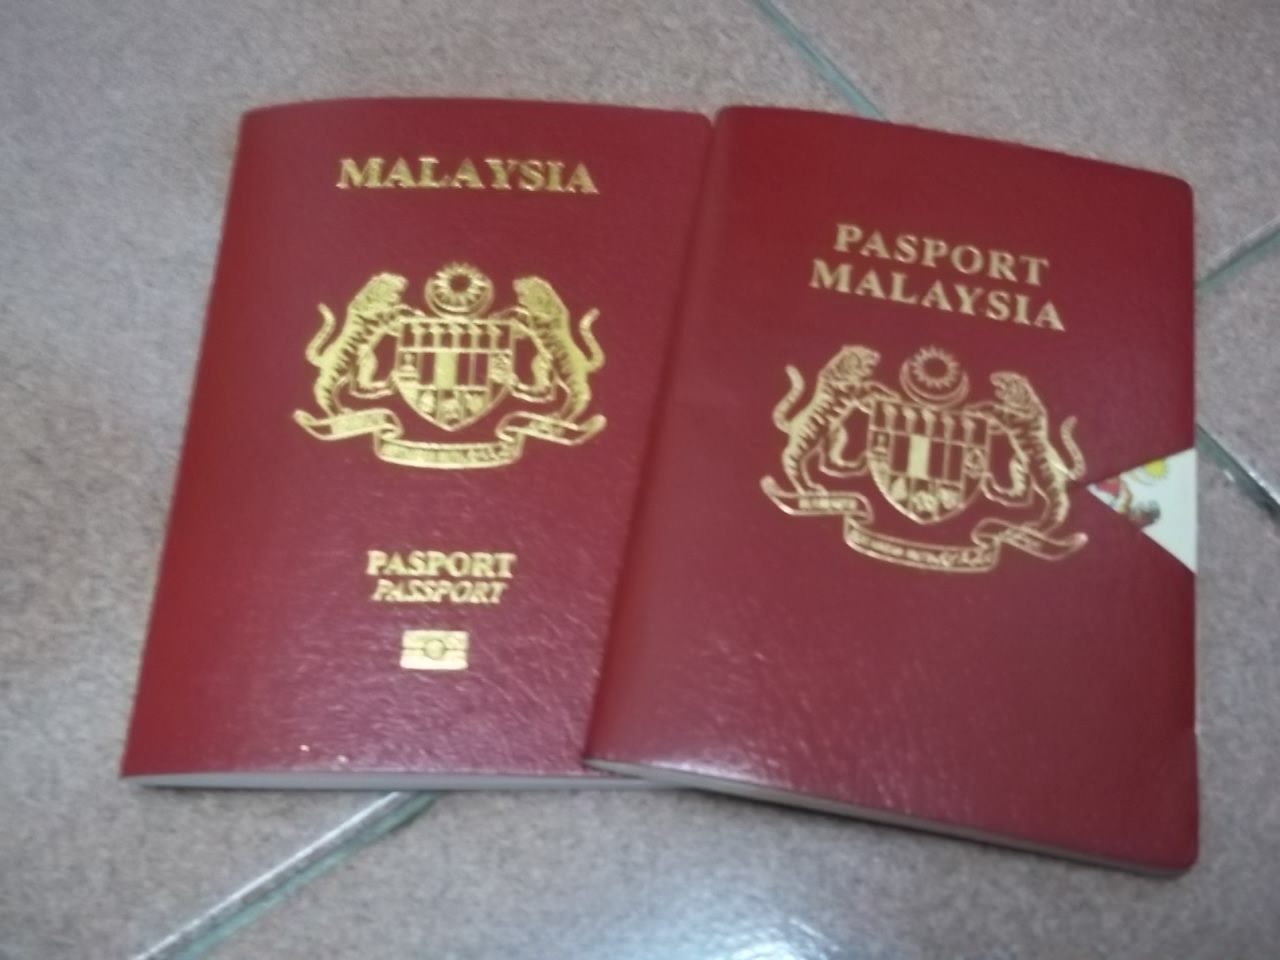 Prosedur, cara membuat passport Malaysia antarabangsa ...